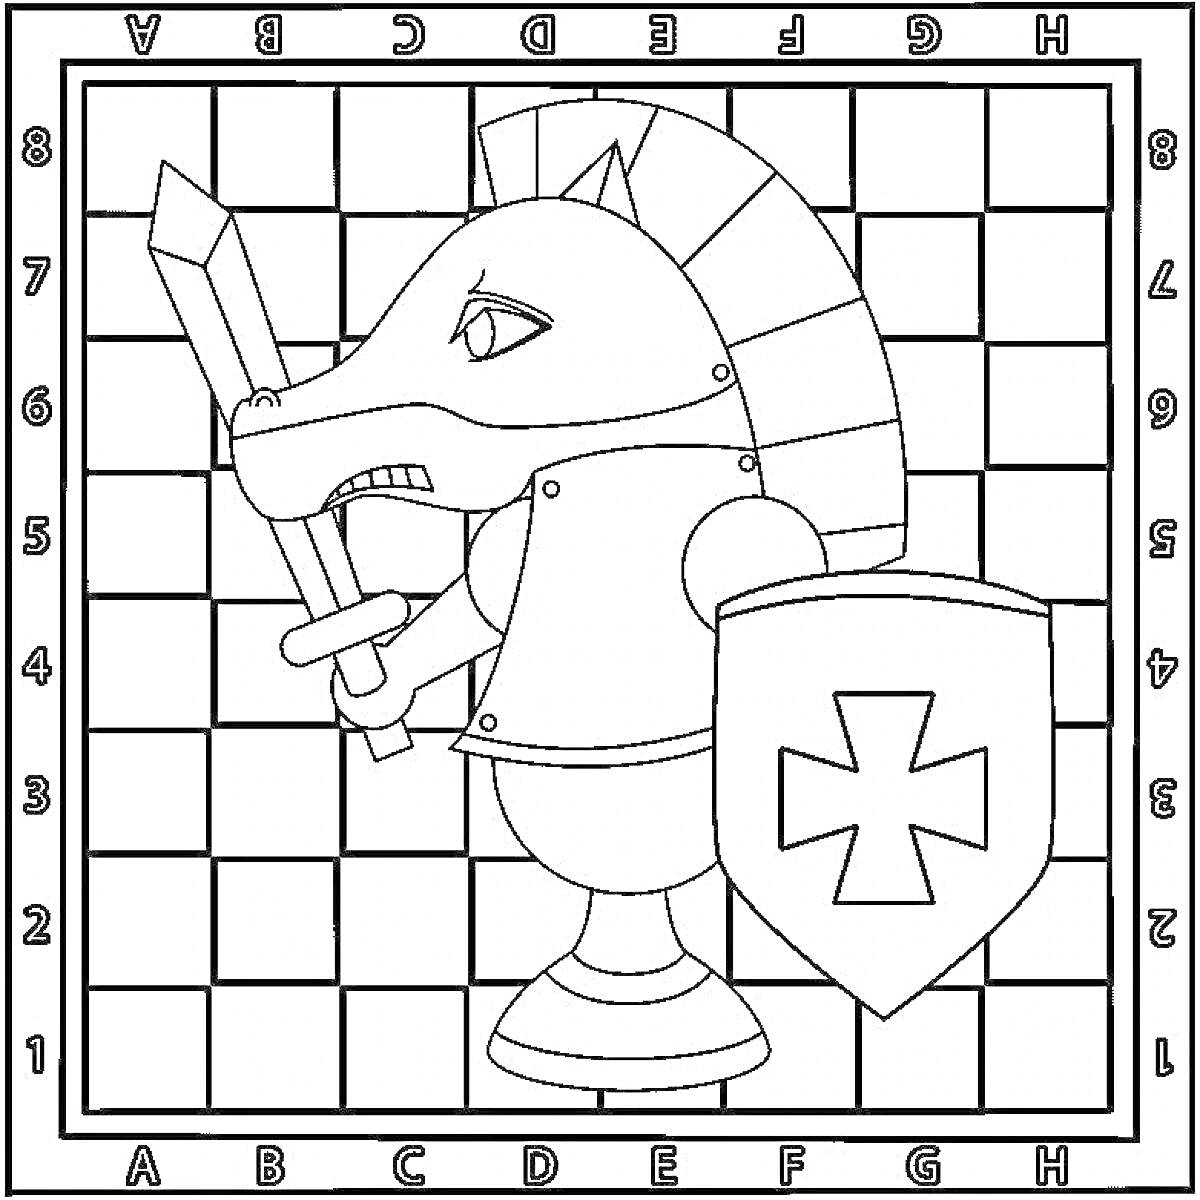 Рыцарь-шахматный конь на шахматной доске с мечом и щитом